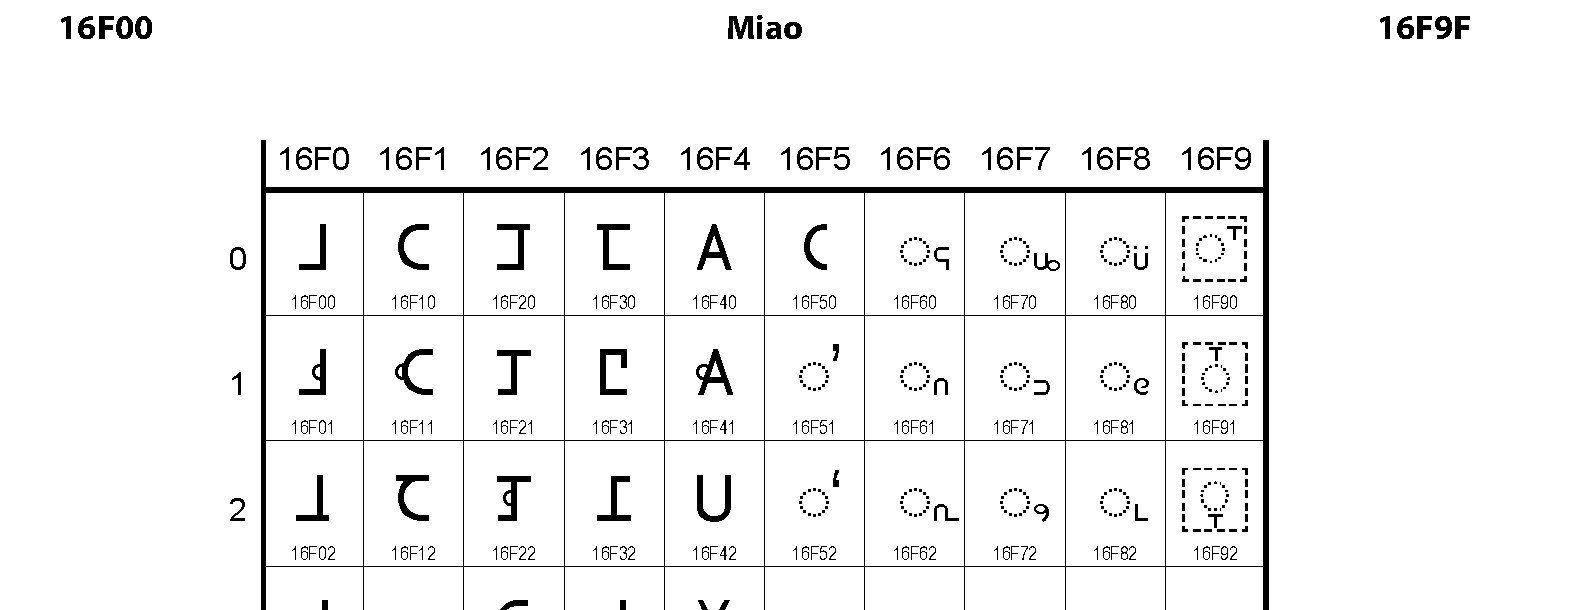 Unicode - Miao